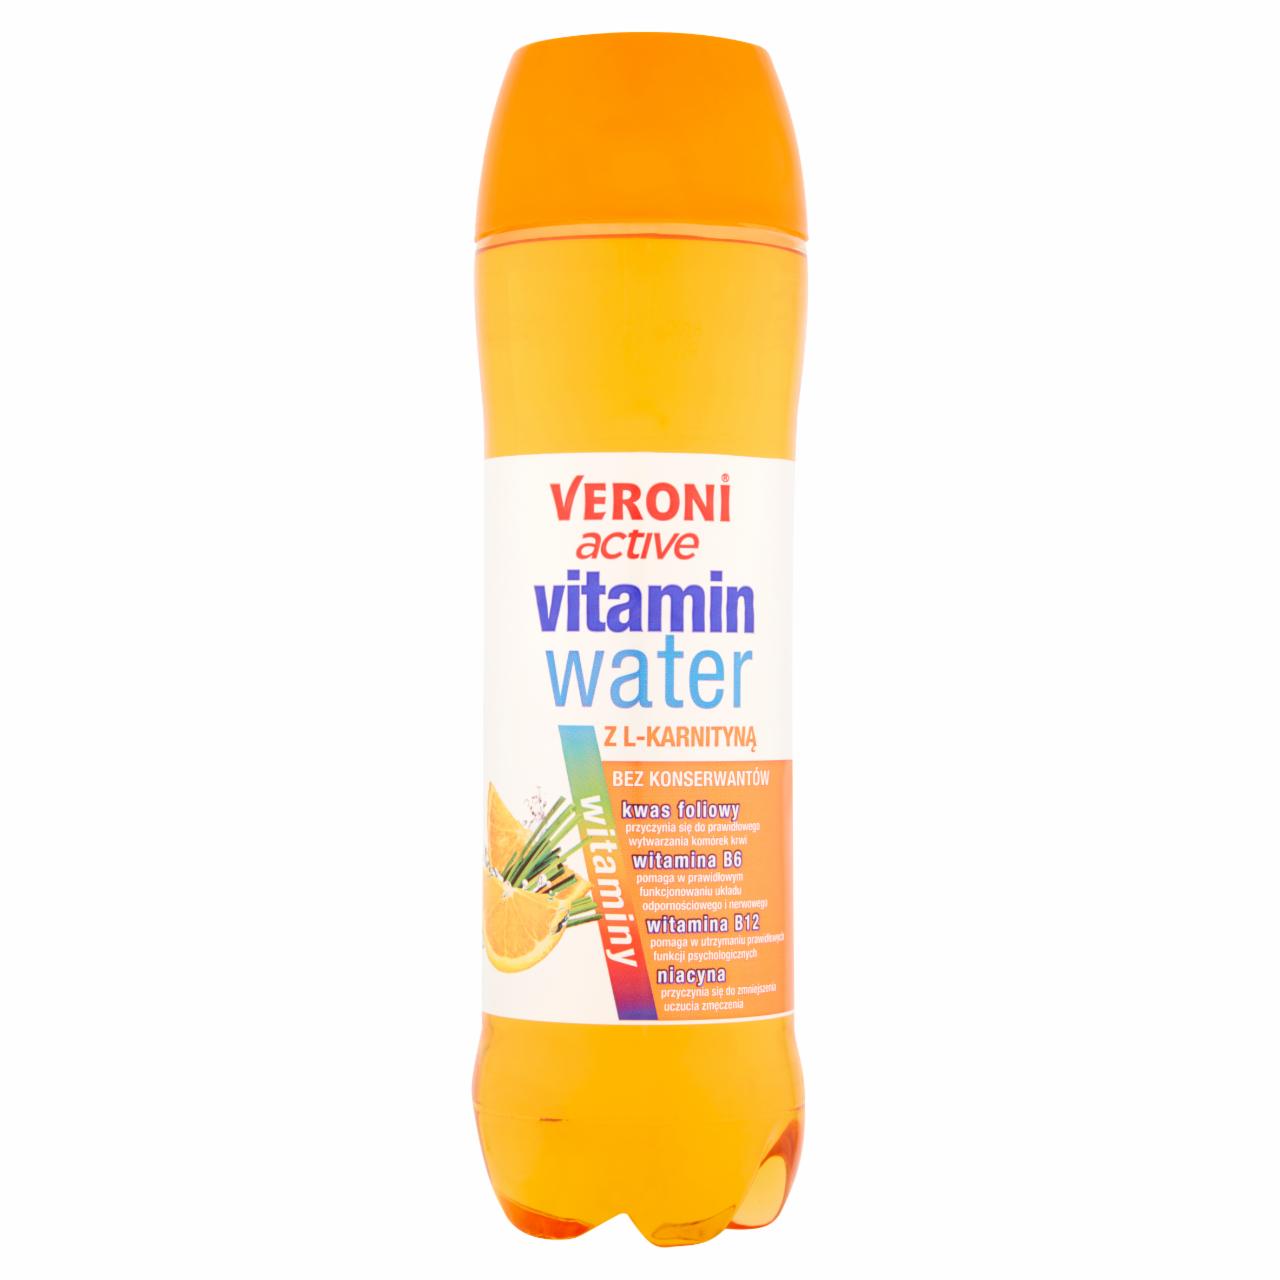 Zdjęcia - Veroni Active Vitamin Water z L-karnityną Napój niegazowany o smaku pomarańczowym 700 ml